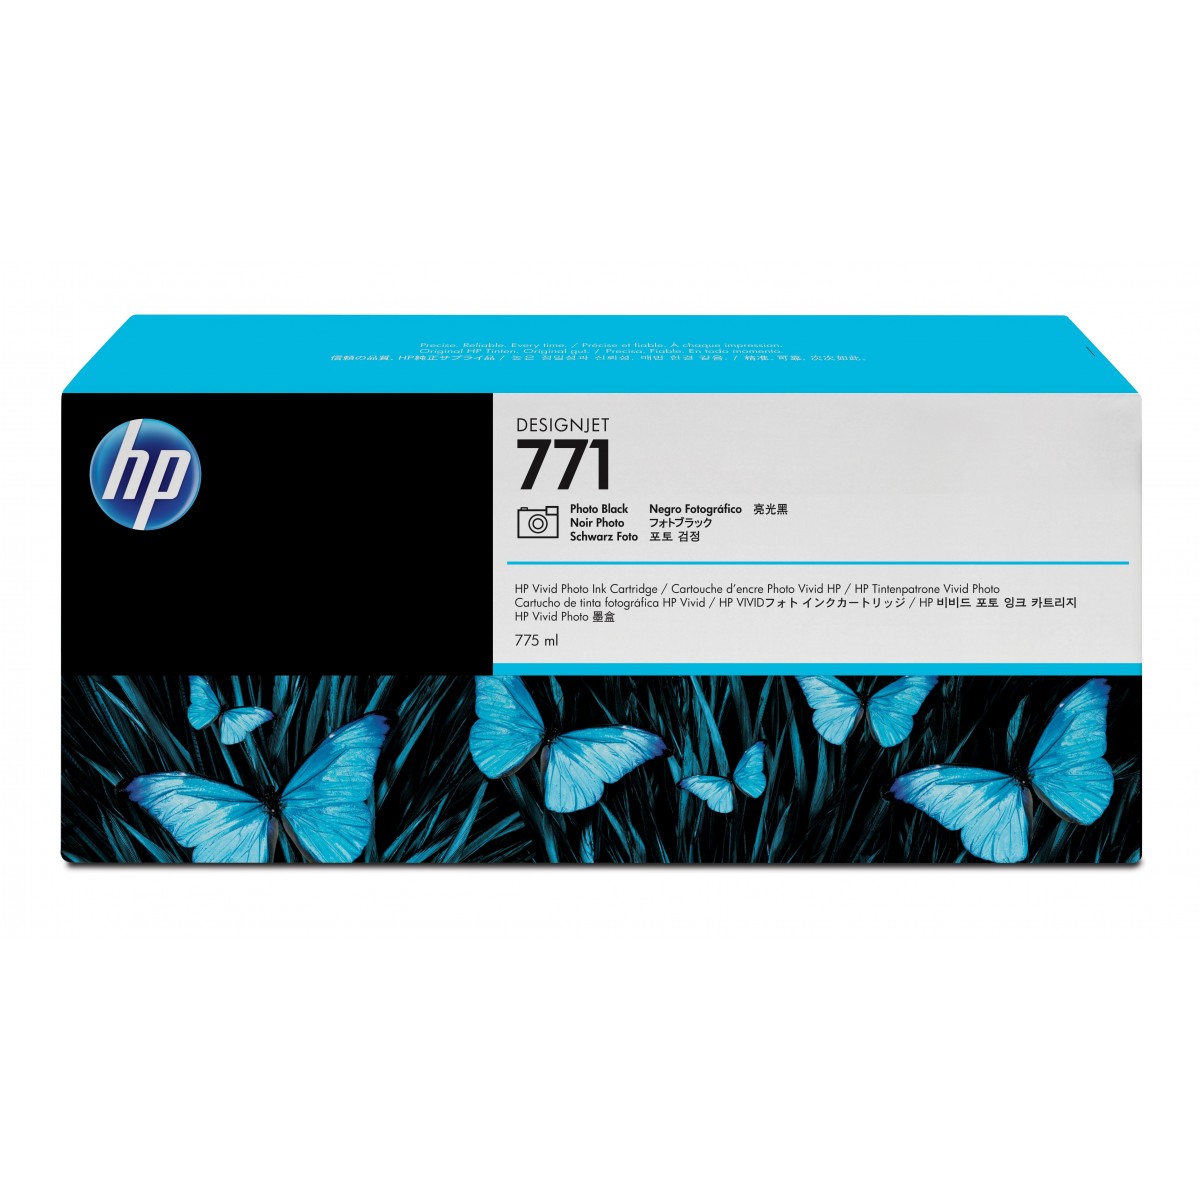 HP 771 - Original - HP DesignJet Z6200 - Z6610 - Z6810 - Inkjet printing - 1 pc(s) - Enterprise - 20 - 80%